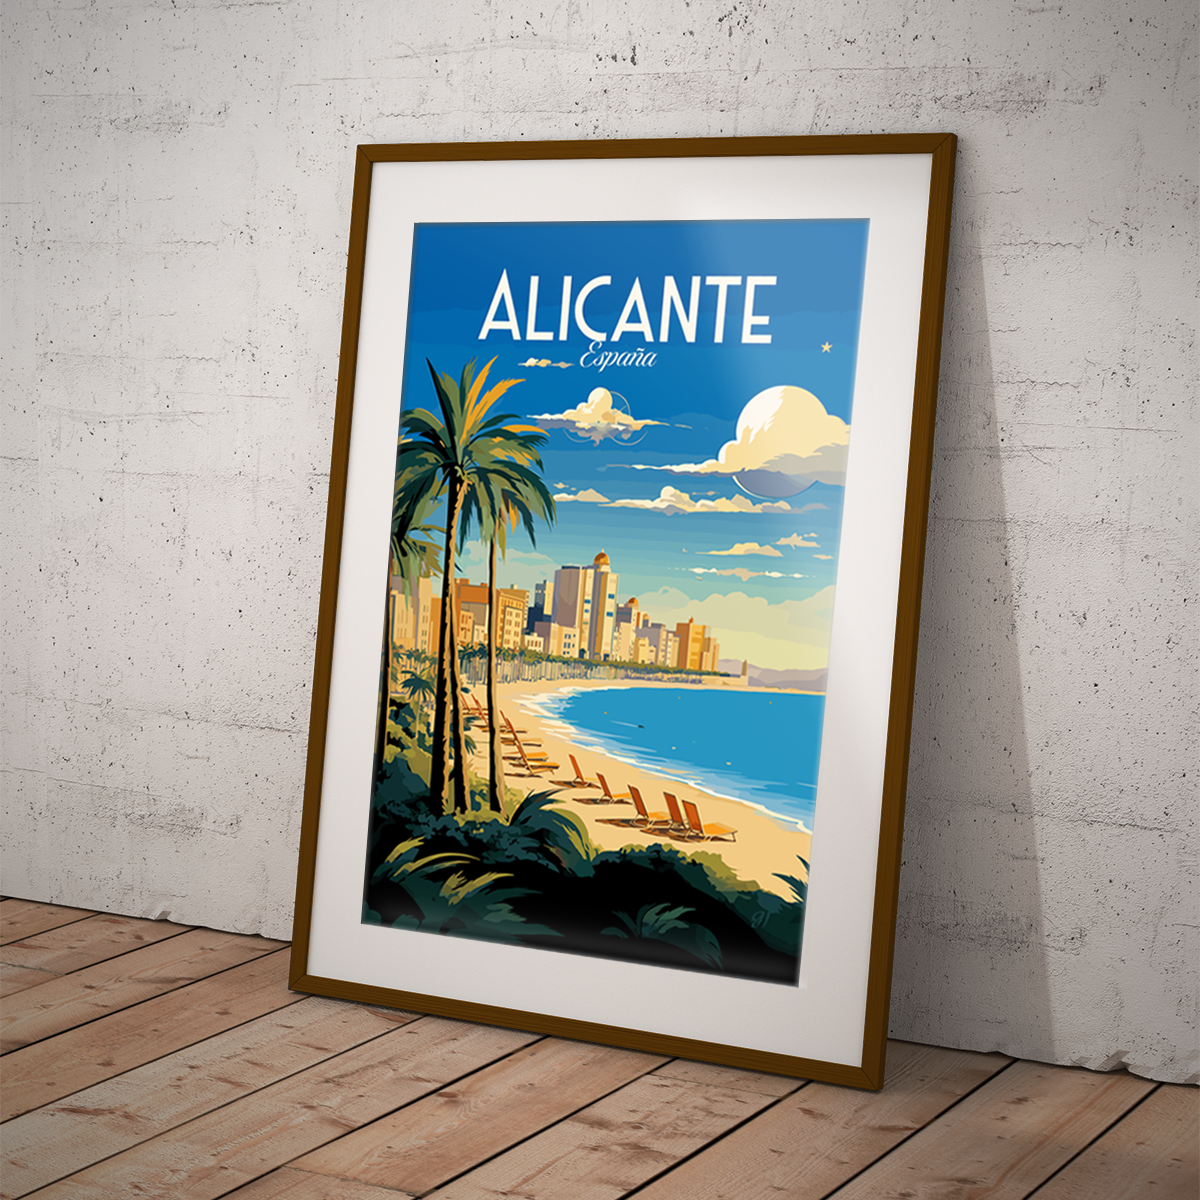 Alicante poster by bon voyage design